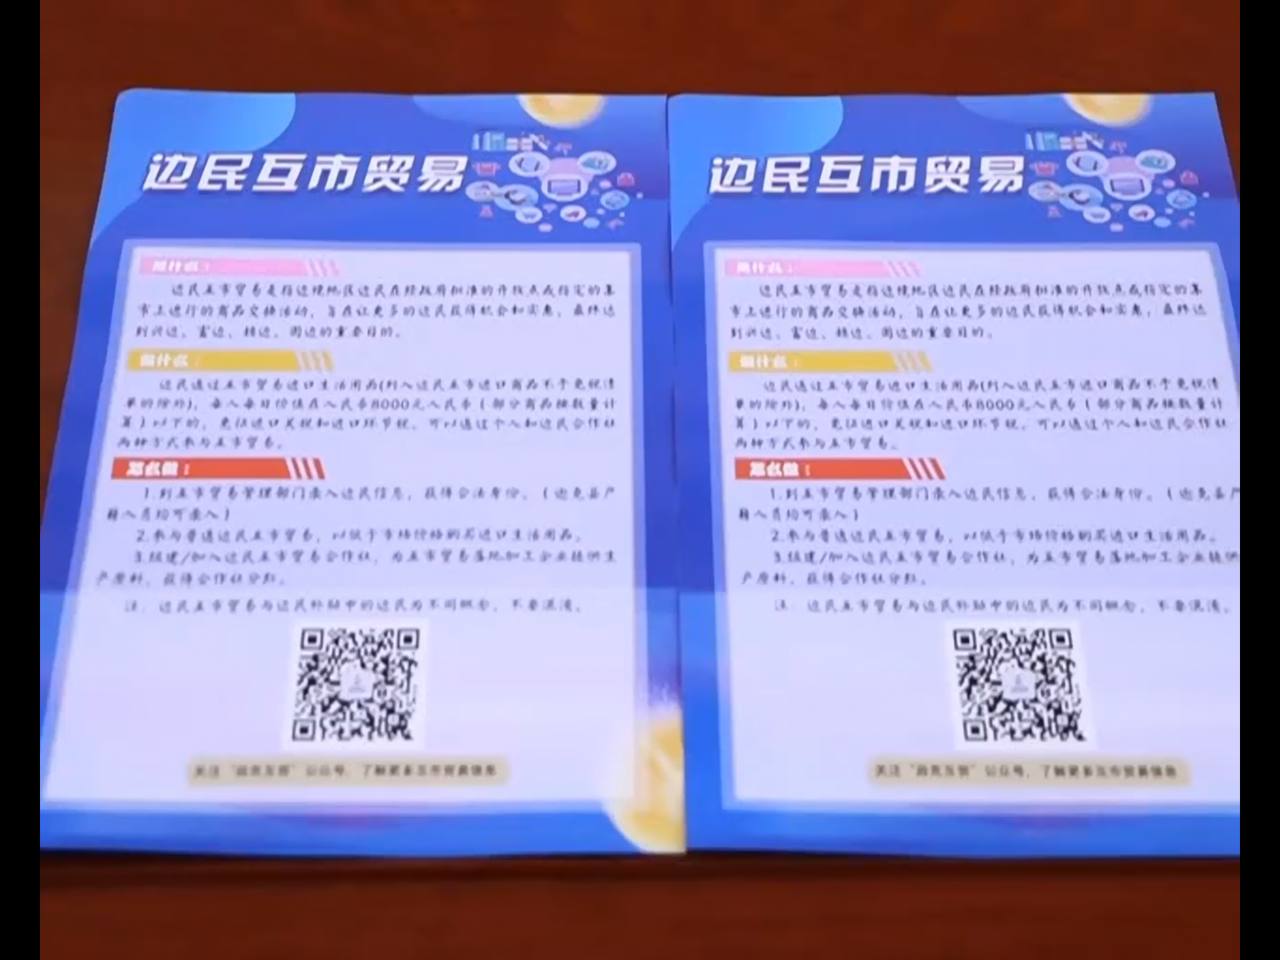 Скриншот: телевидение уезда Сюнькэ